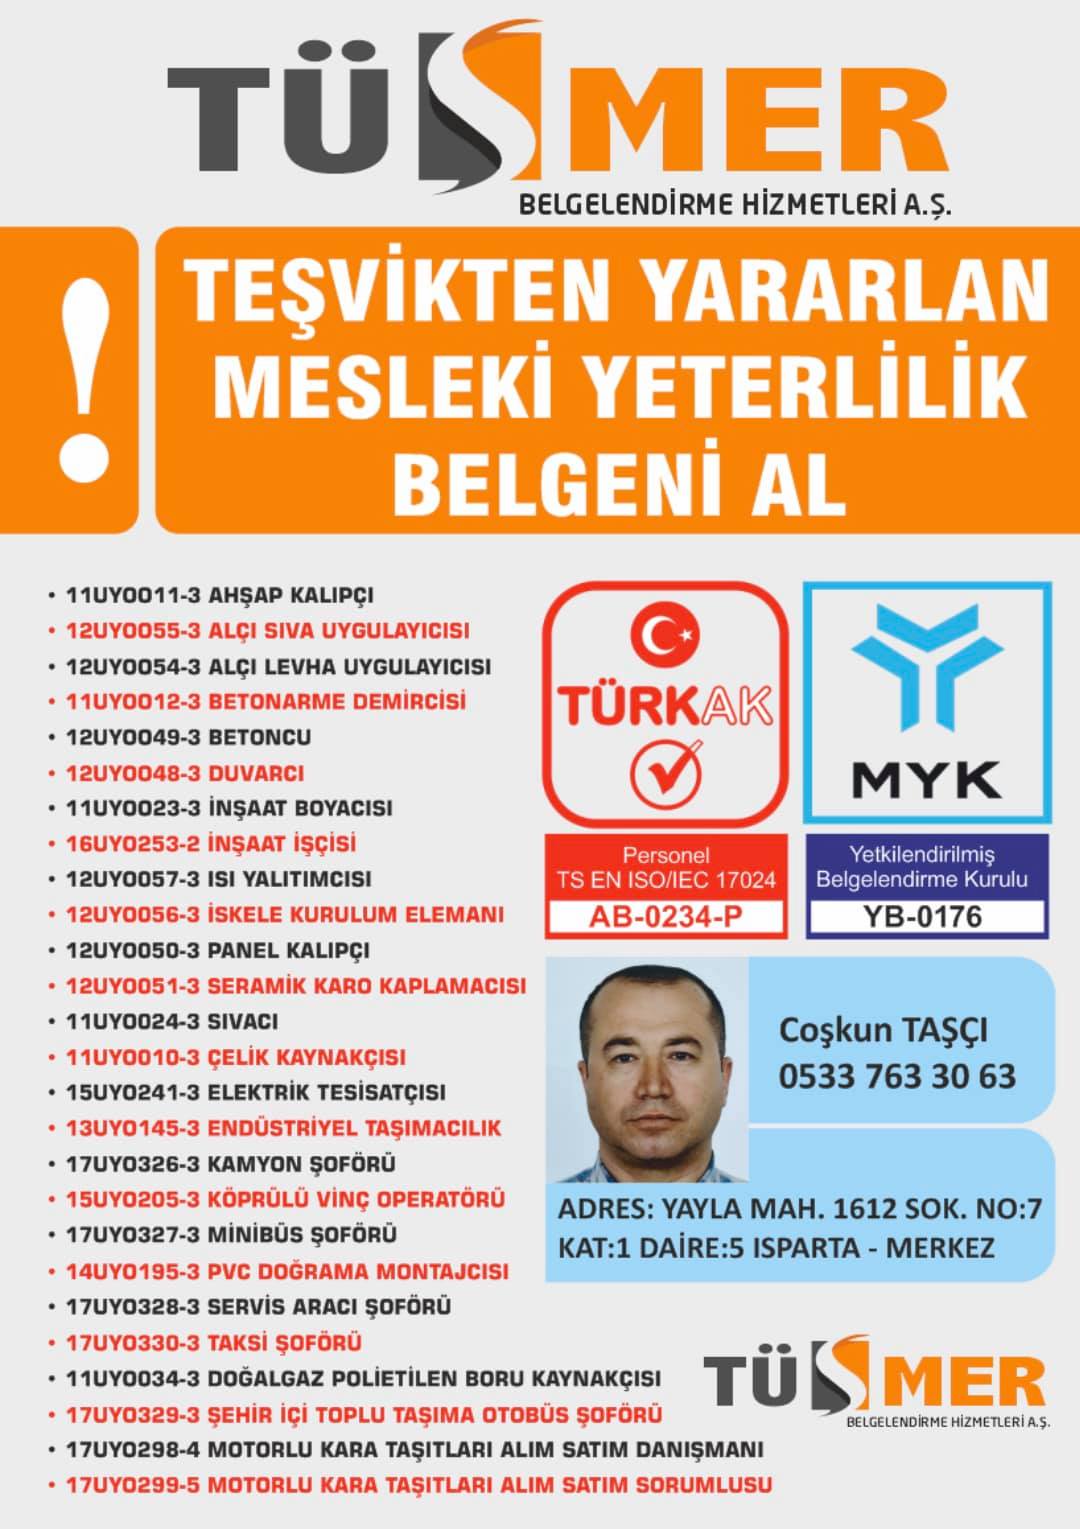 MYK MESLEKİ YETERLİLİK BELGESİ İdealtepe Maltepe İstanbul